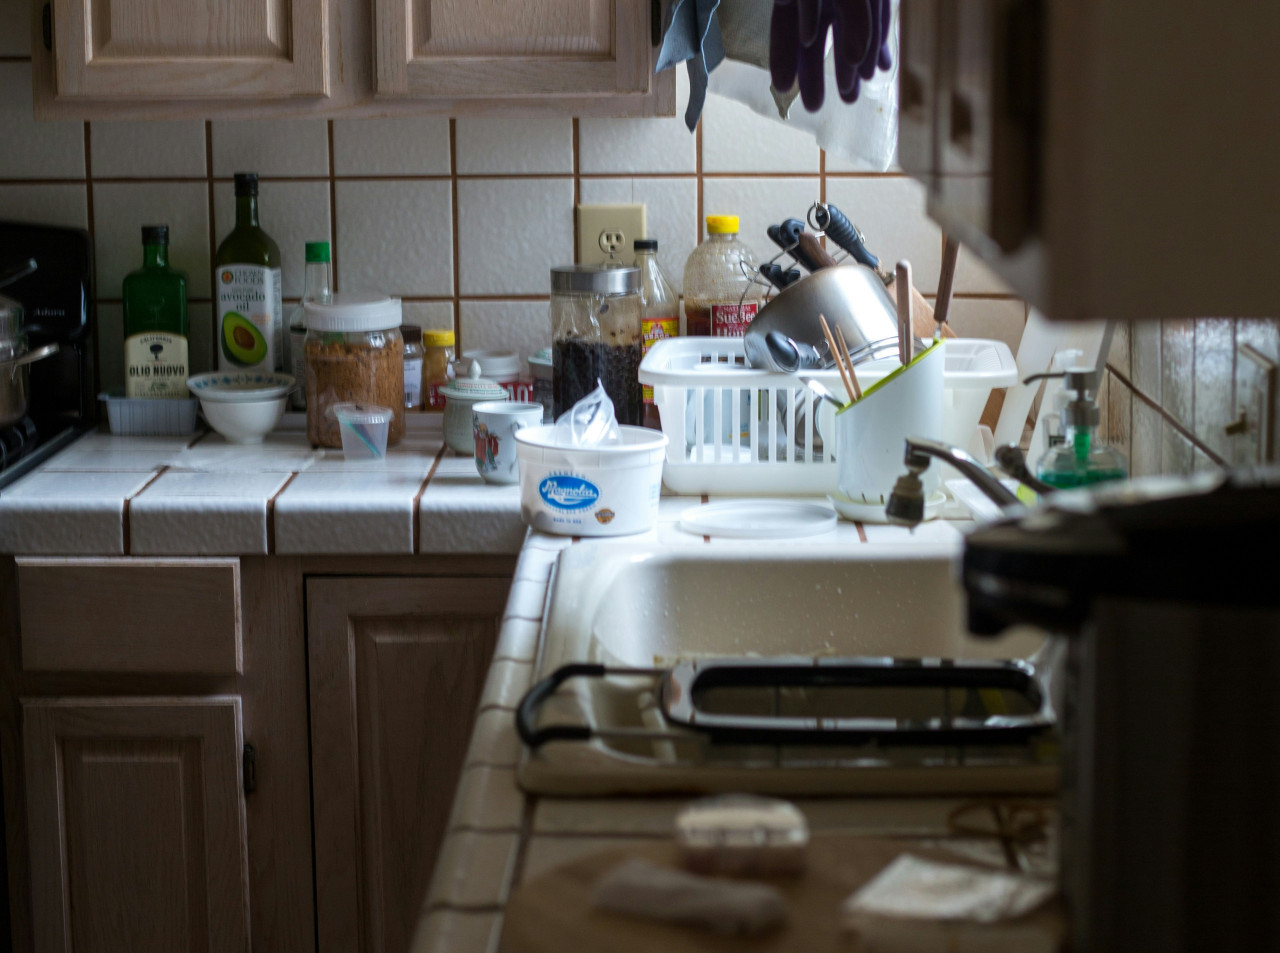 Limpieza, cocina, bacterias. Foto: Unsplash